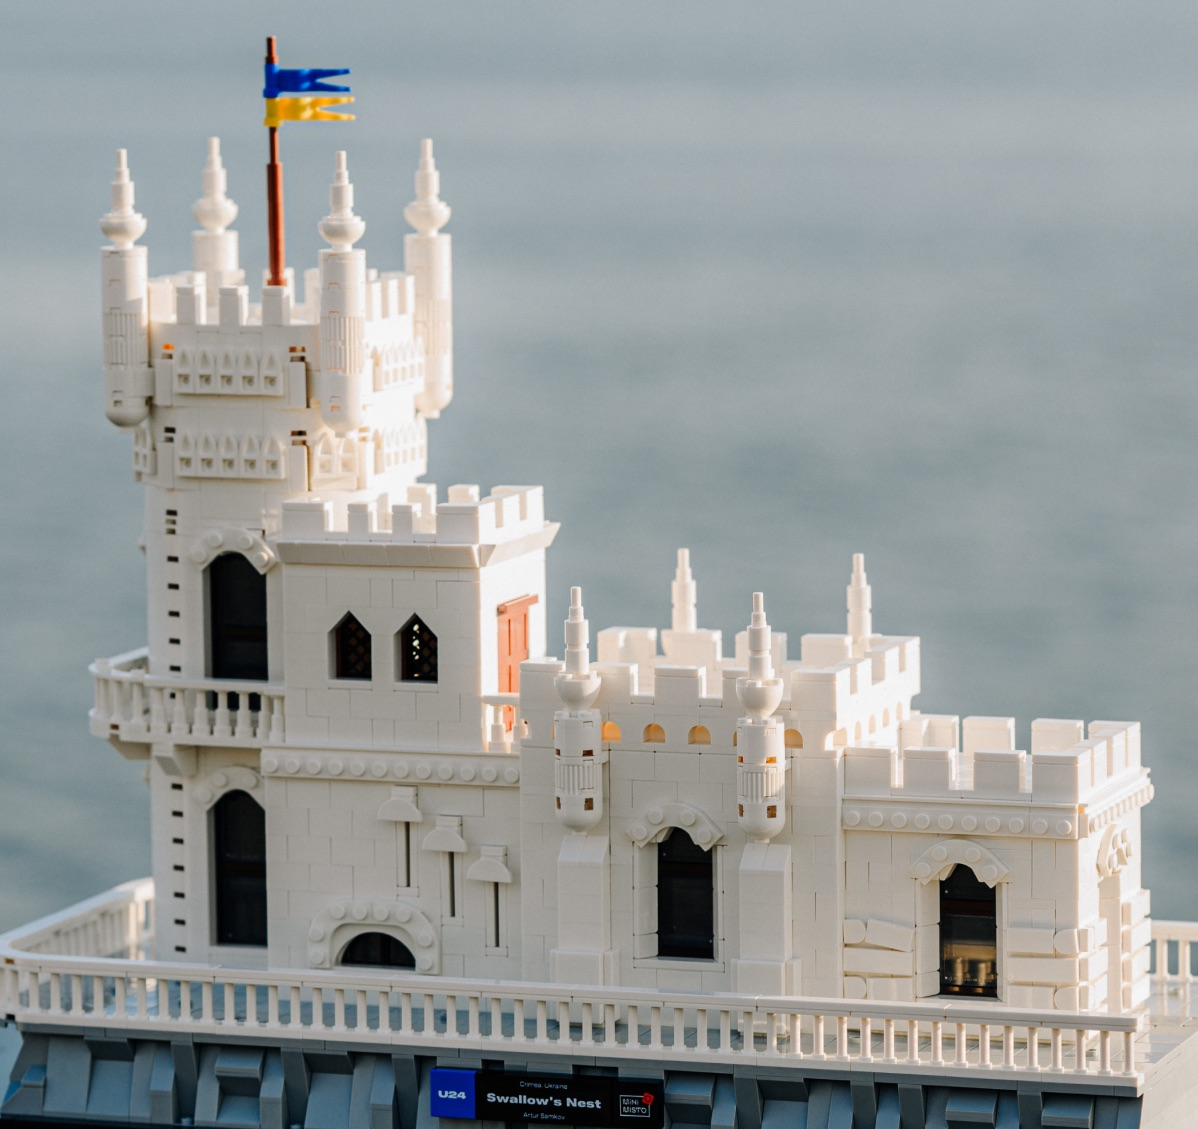 Лего-модели украинских памятников от UNITED24 и LEGO стали путем восстановления Украины. 